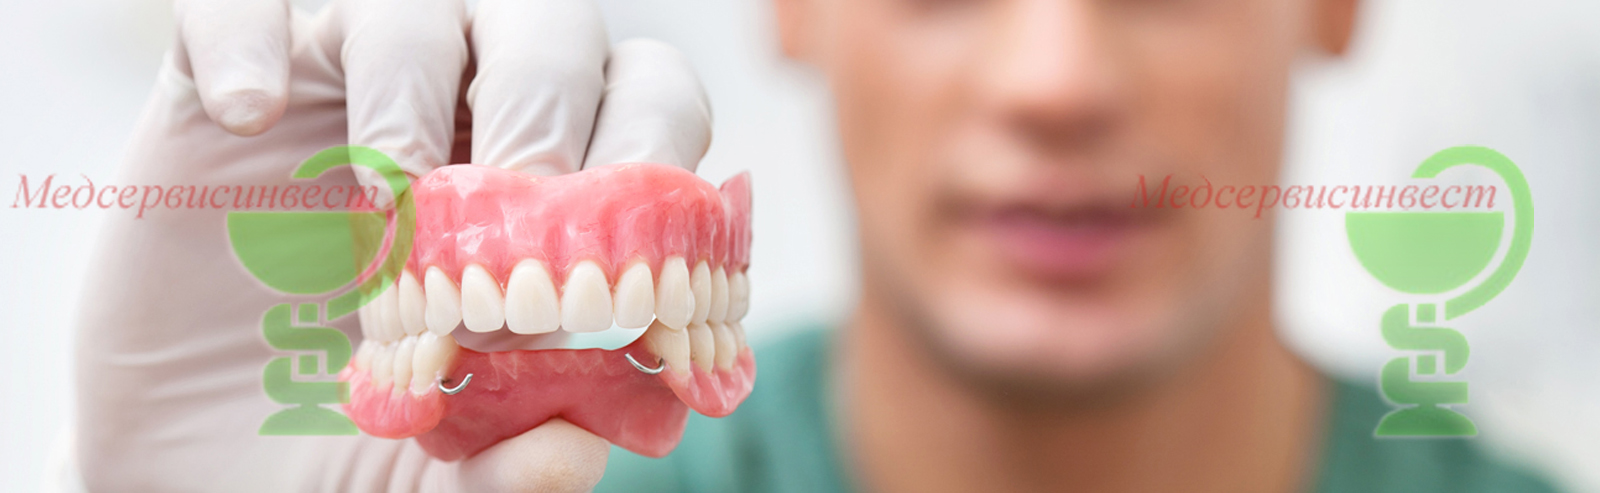 Протезы на зубы бюгельные металлокерамика фото до и после МИнск